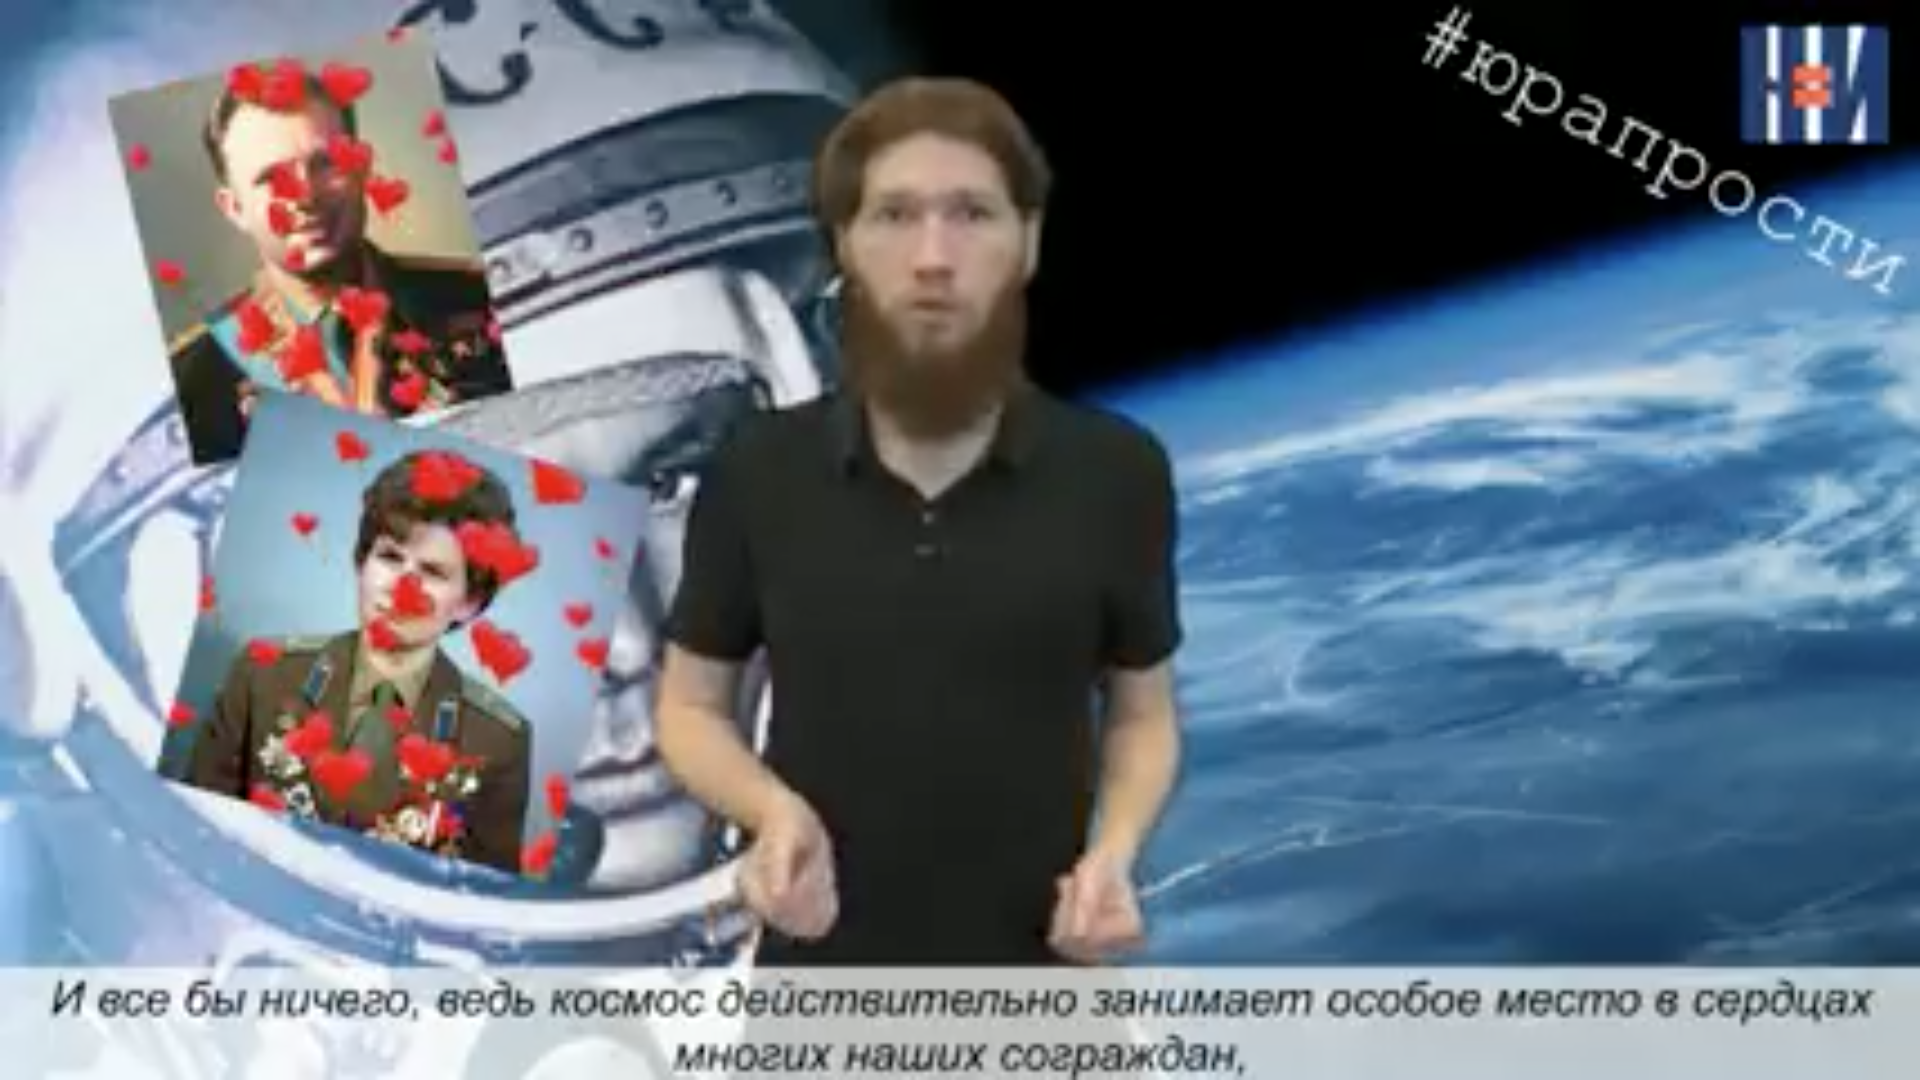 Видеоблог "НИ": Космос как религия и Рогозин - Верховный жрец